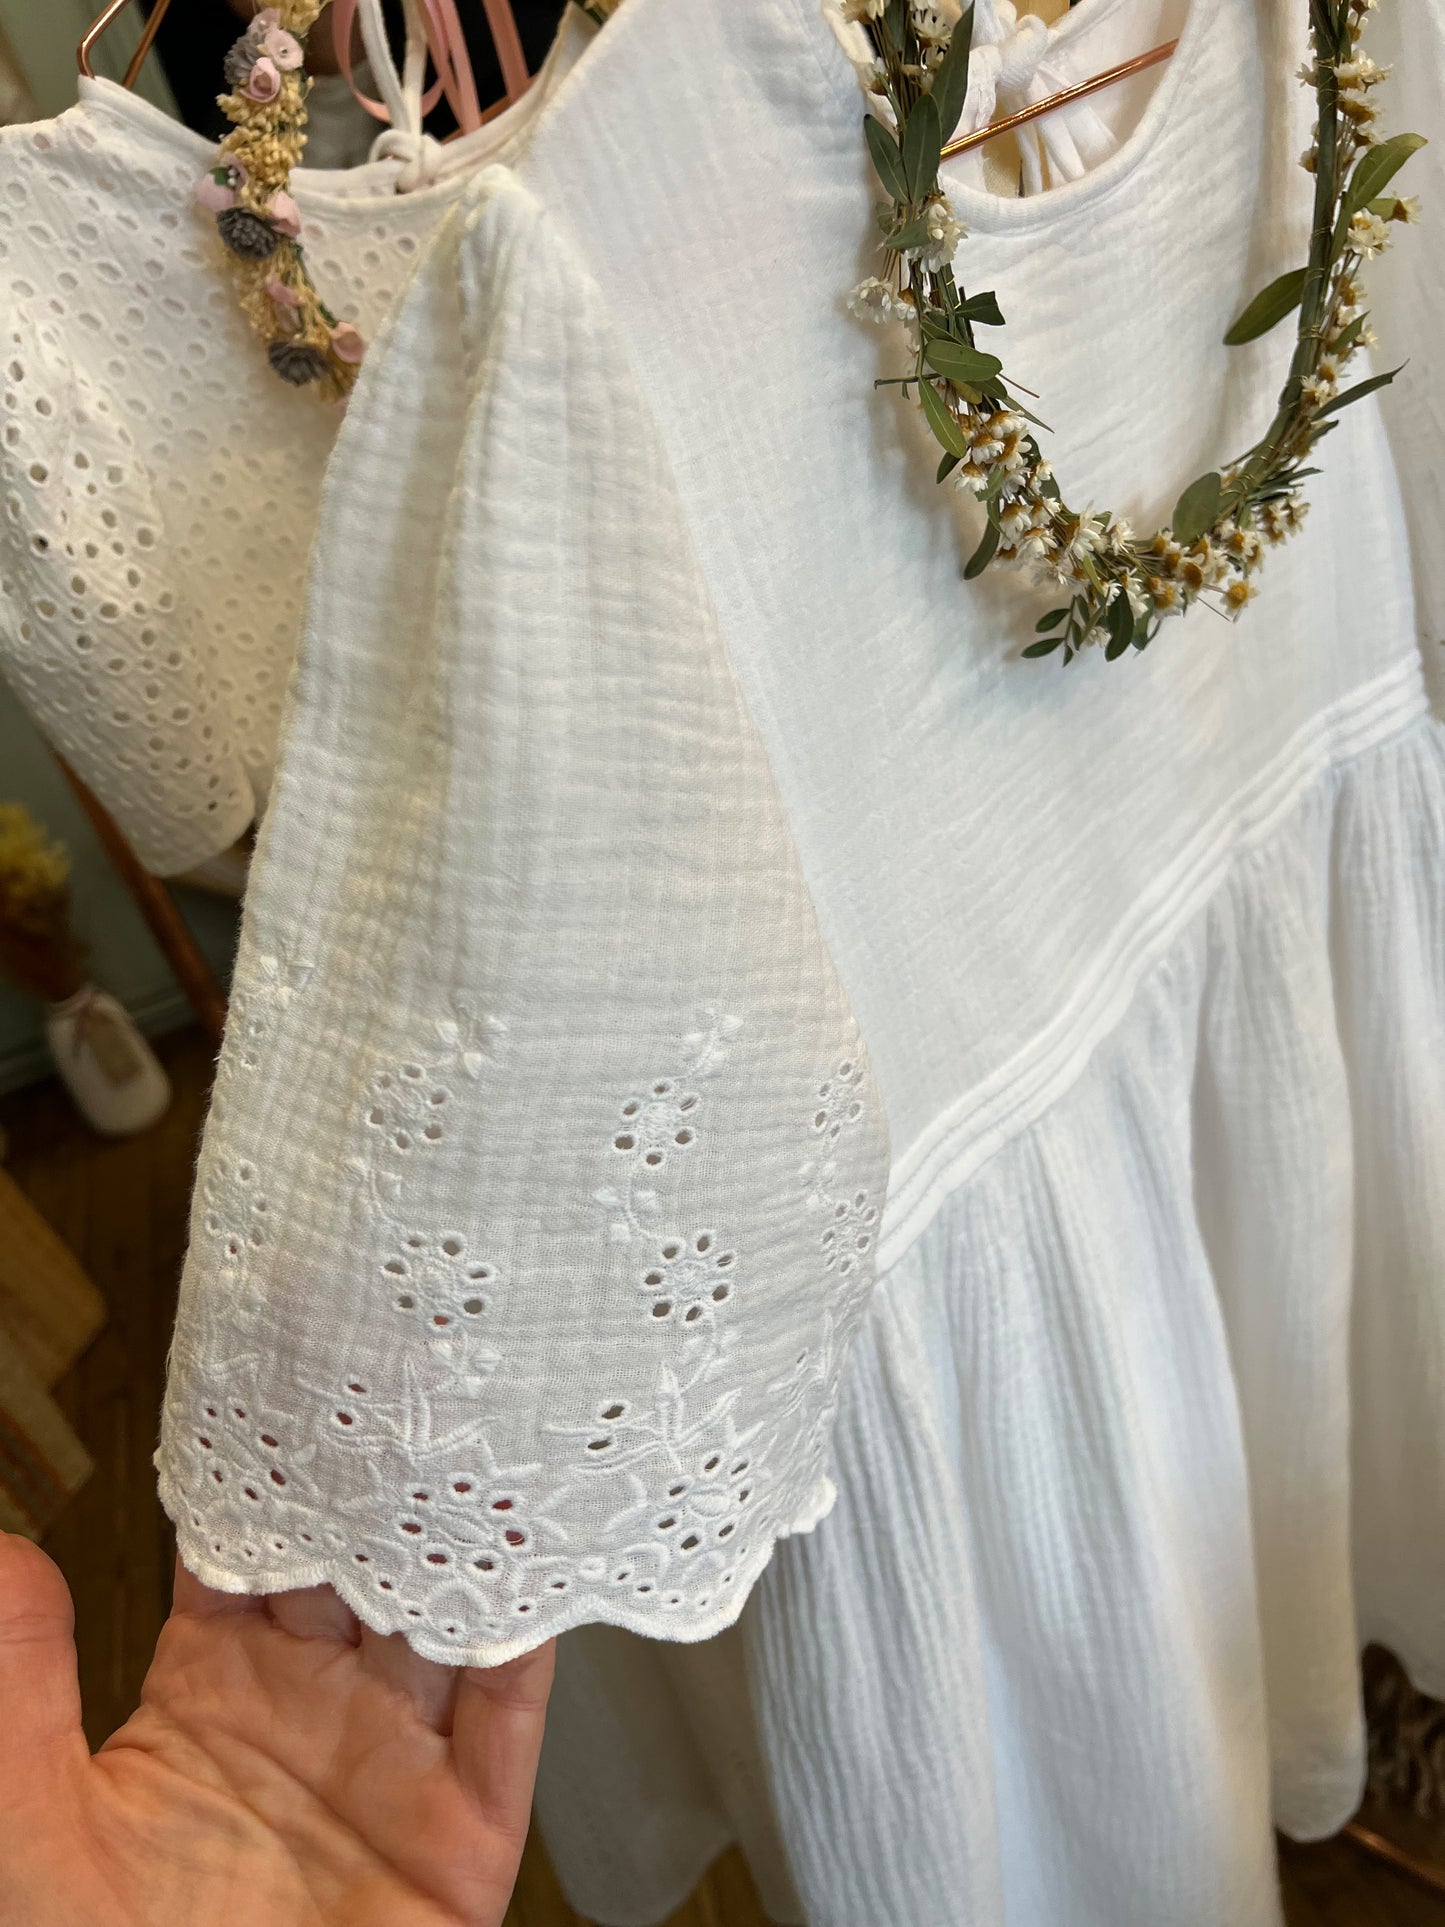 Kleid ILVY in der Stoff-Variante "Vergissmeinnicht"